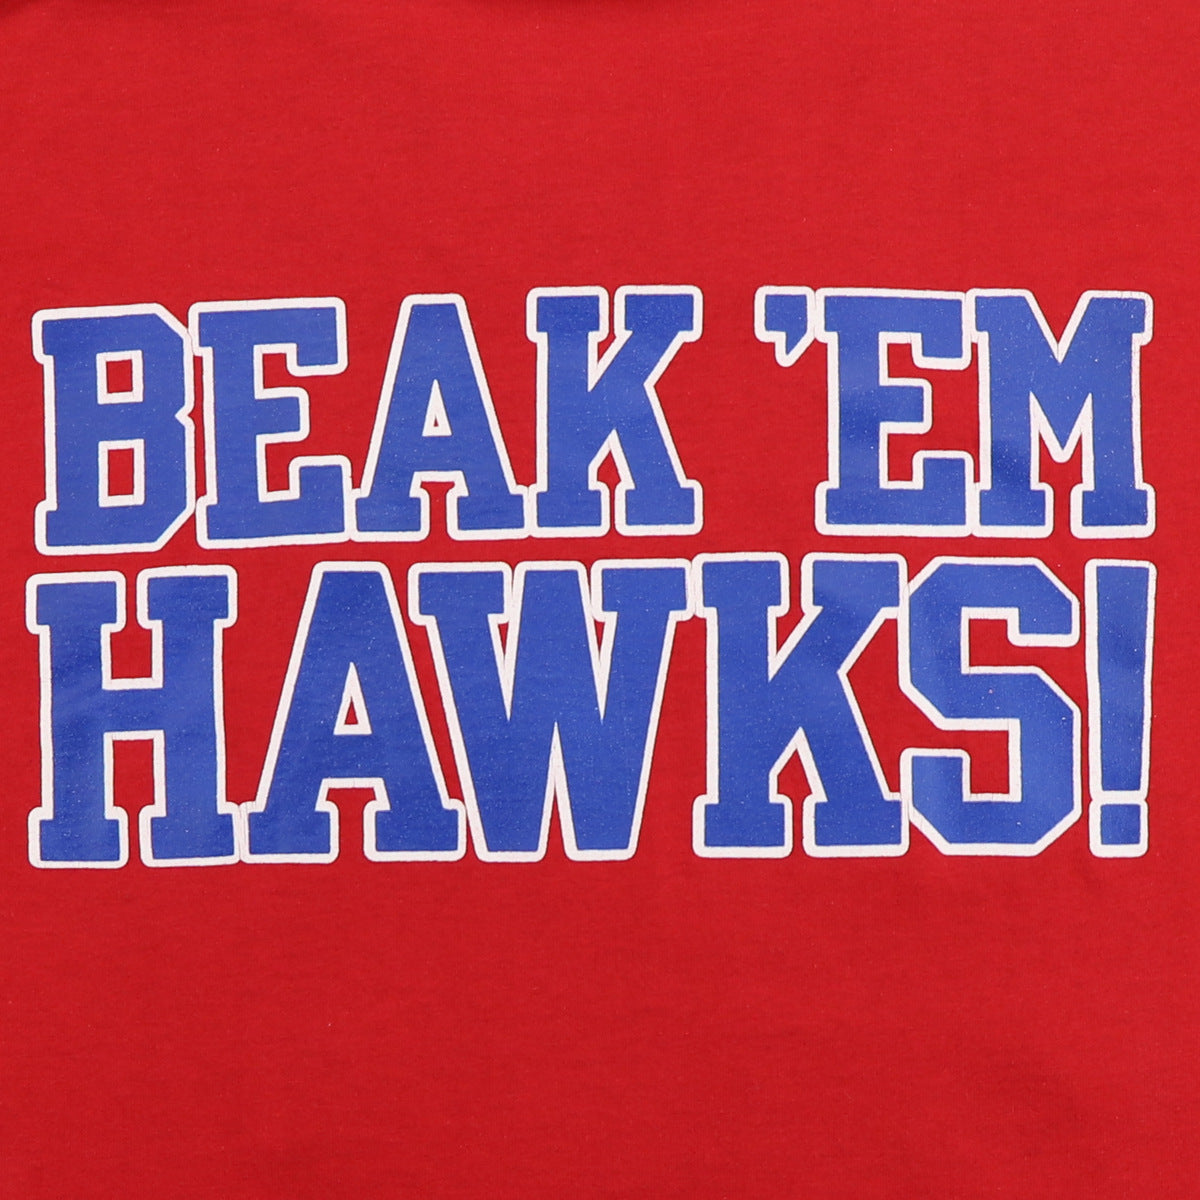 1980s Kansas University Jayhawks Beak Em Hawks Shirt